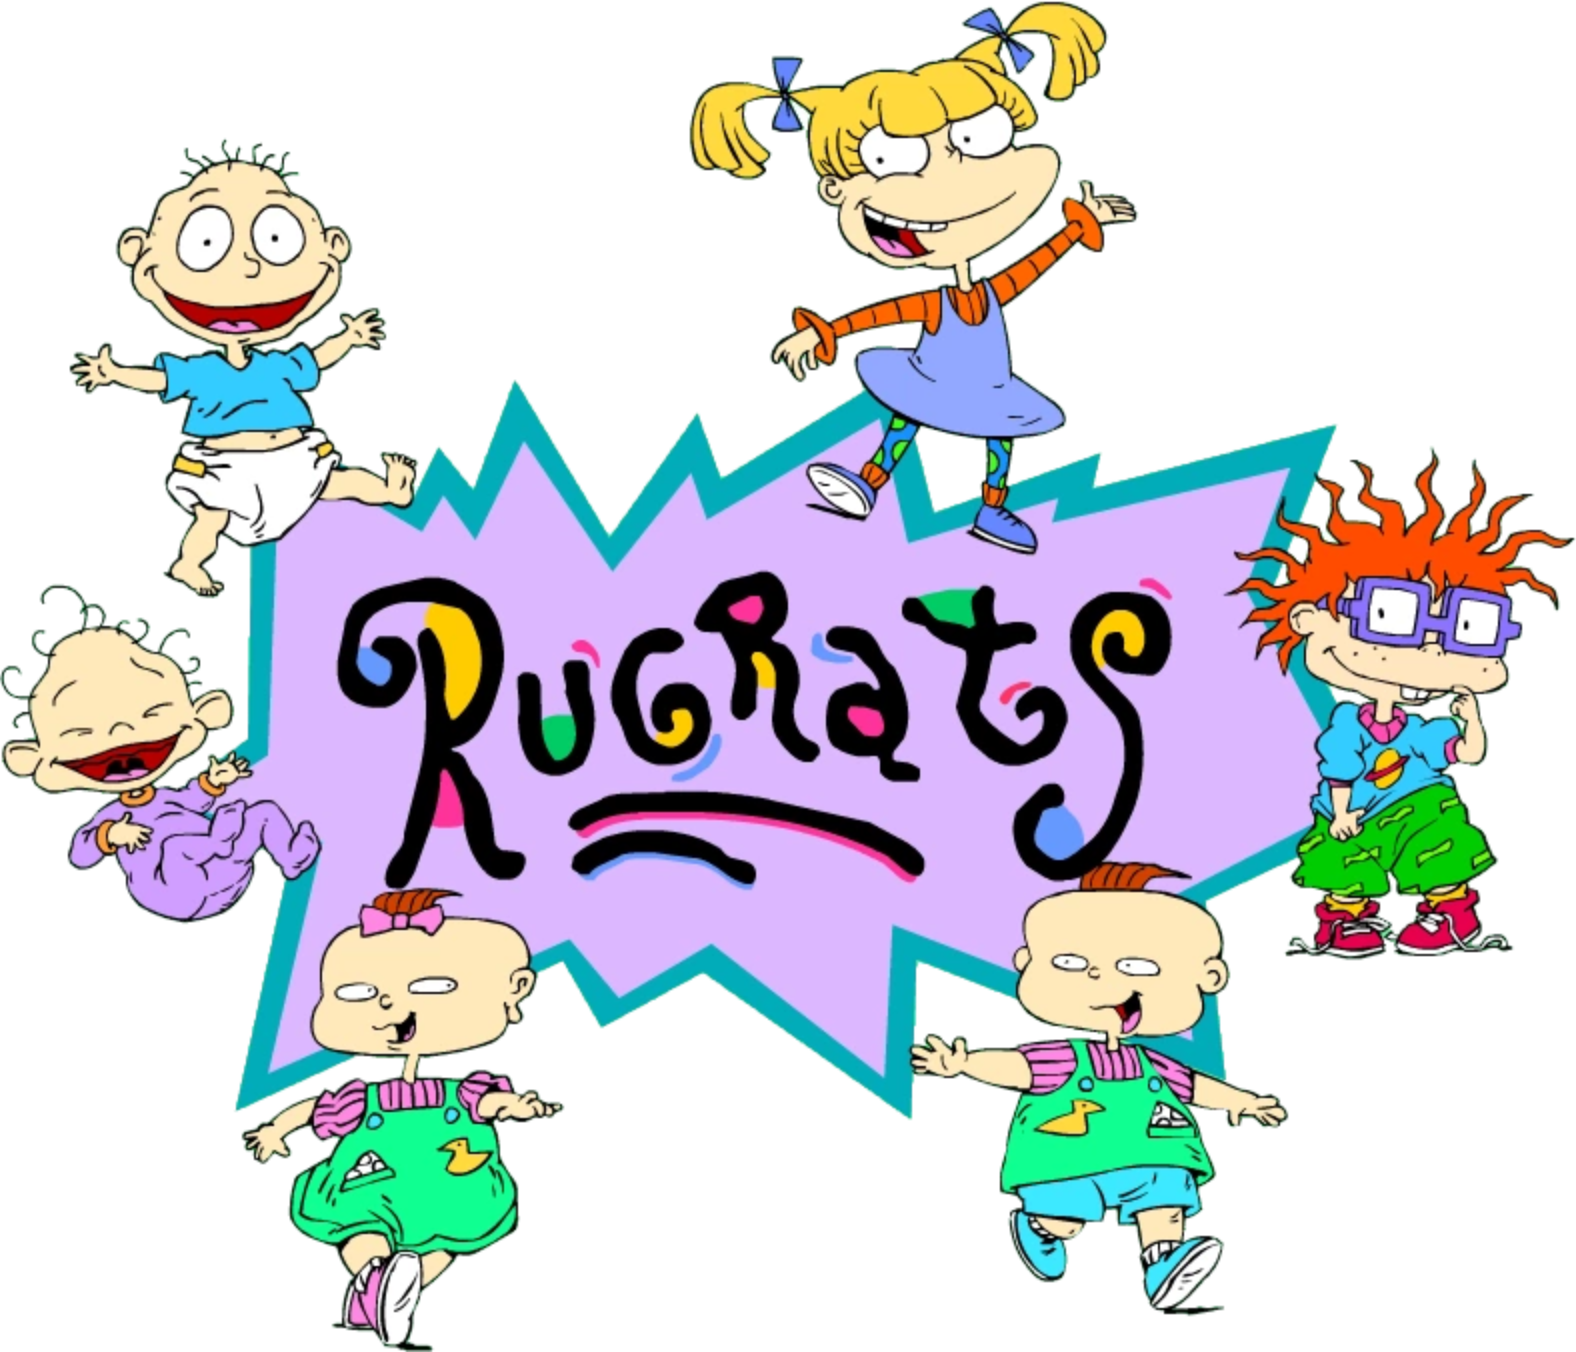 Rugrats Volume 3 (6 DVDs Box Set)